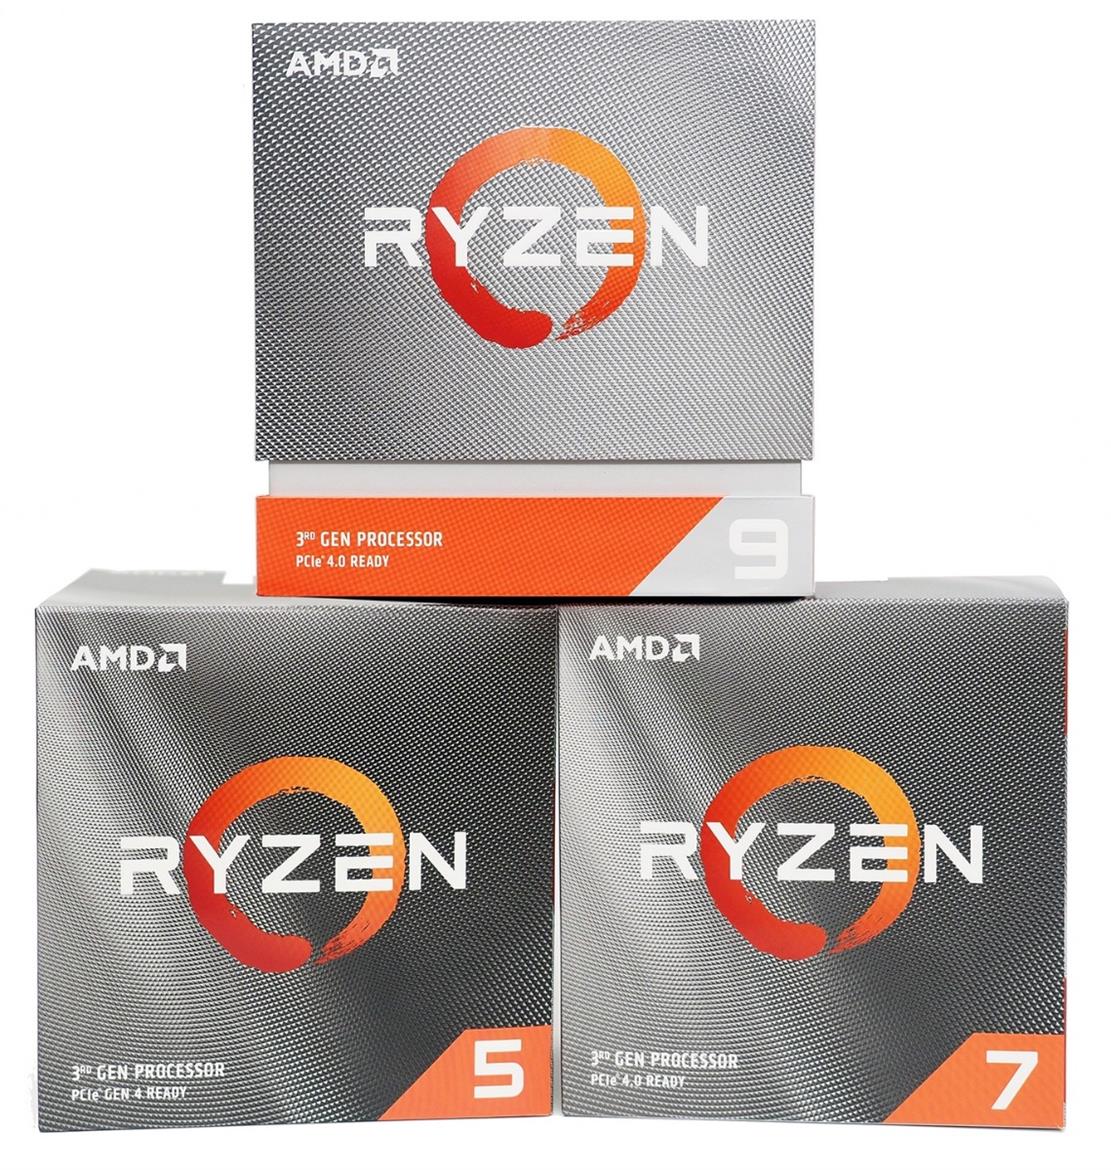 AMD Ryzen 3000XT Processors Reviewed: Zen 2 Turbocharged